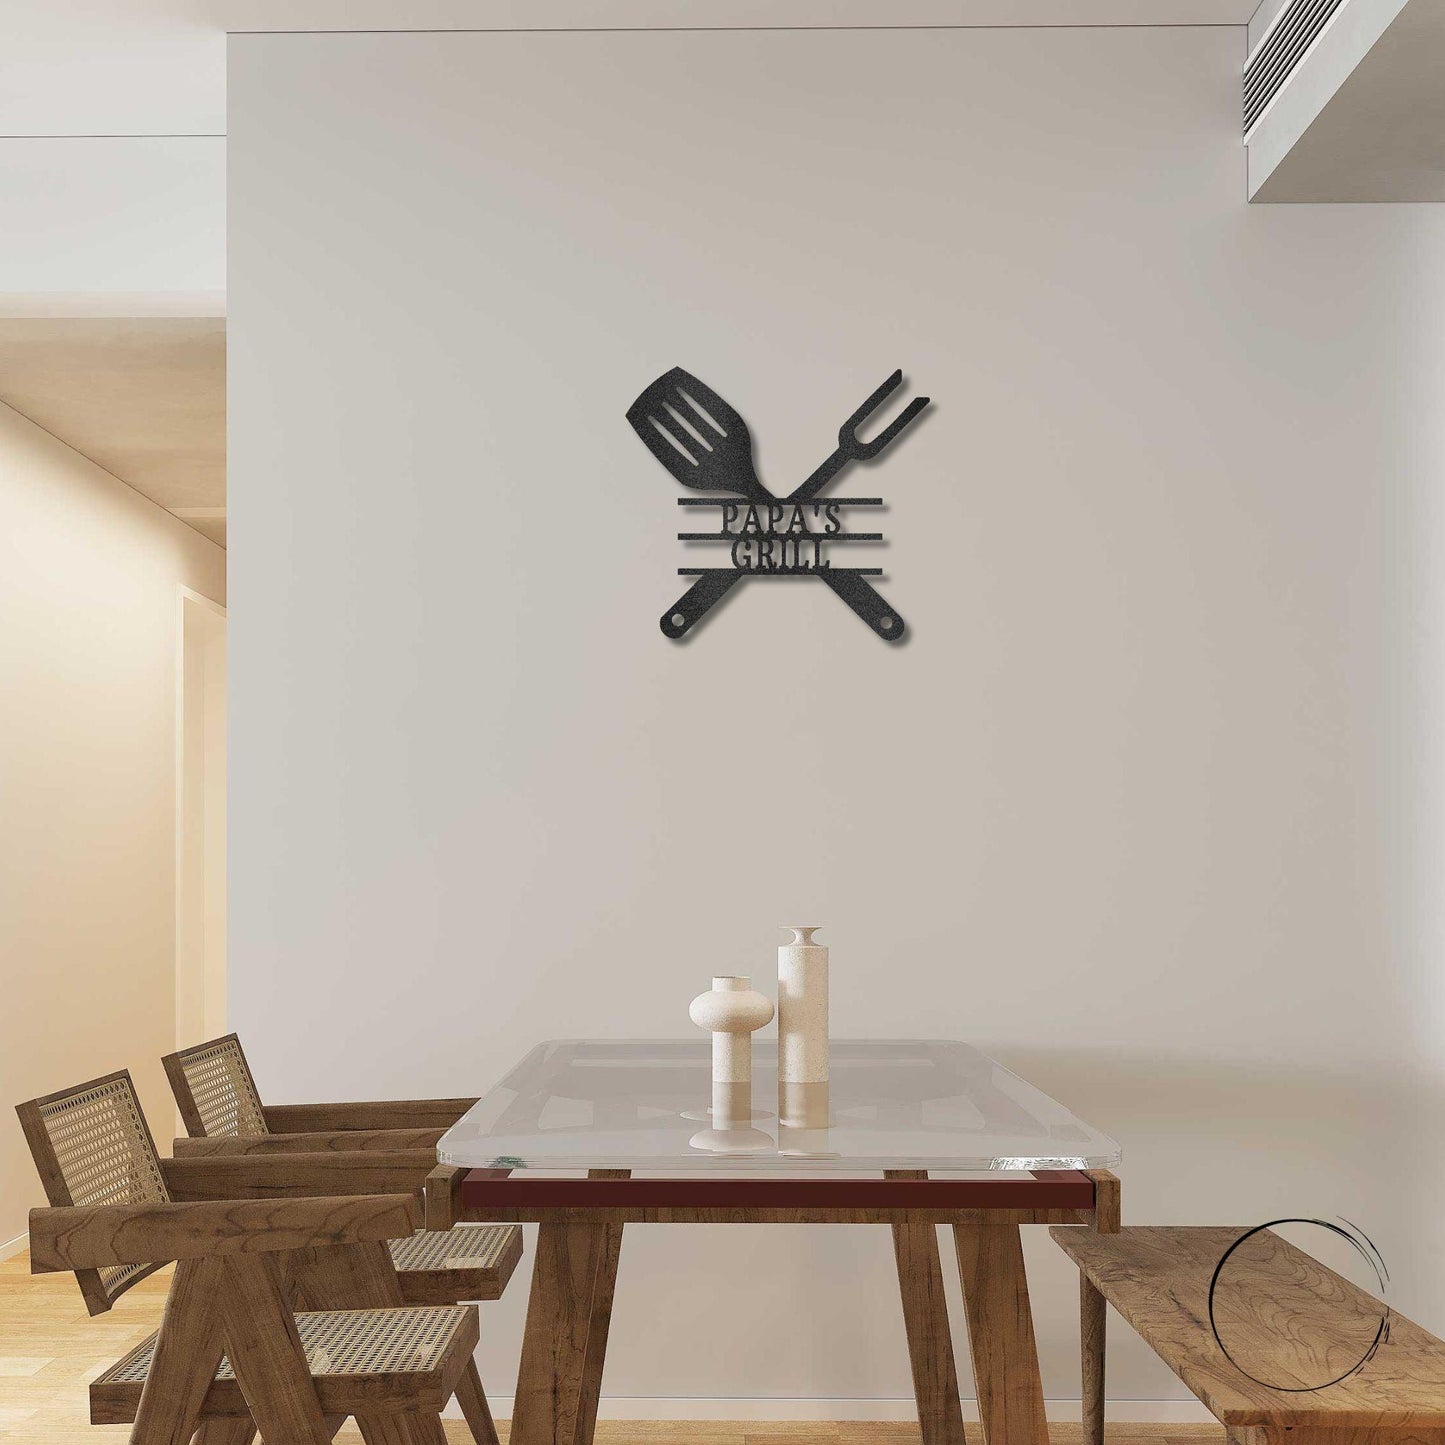 Grilling Utensils Personalized Indoor Outdoor Steel Wall Sign Art - Mallard Moon Gift Shop